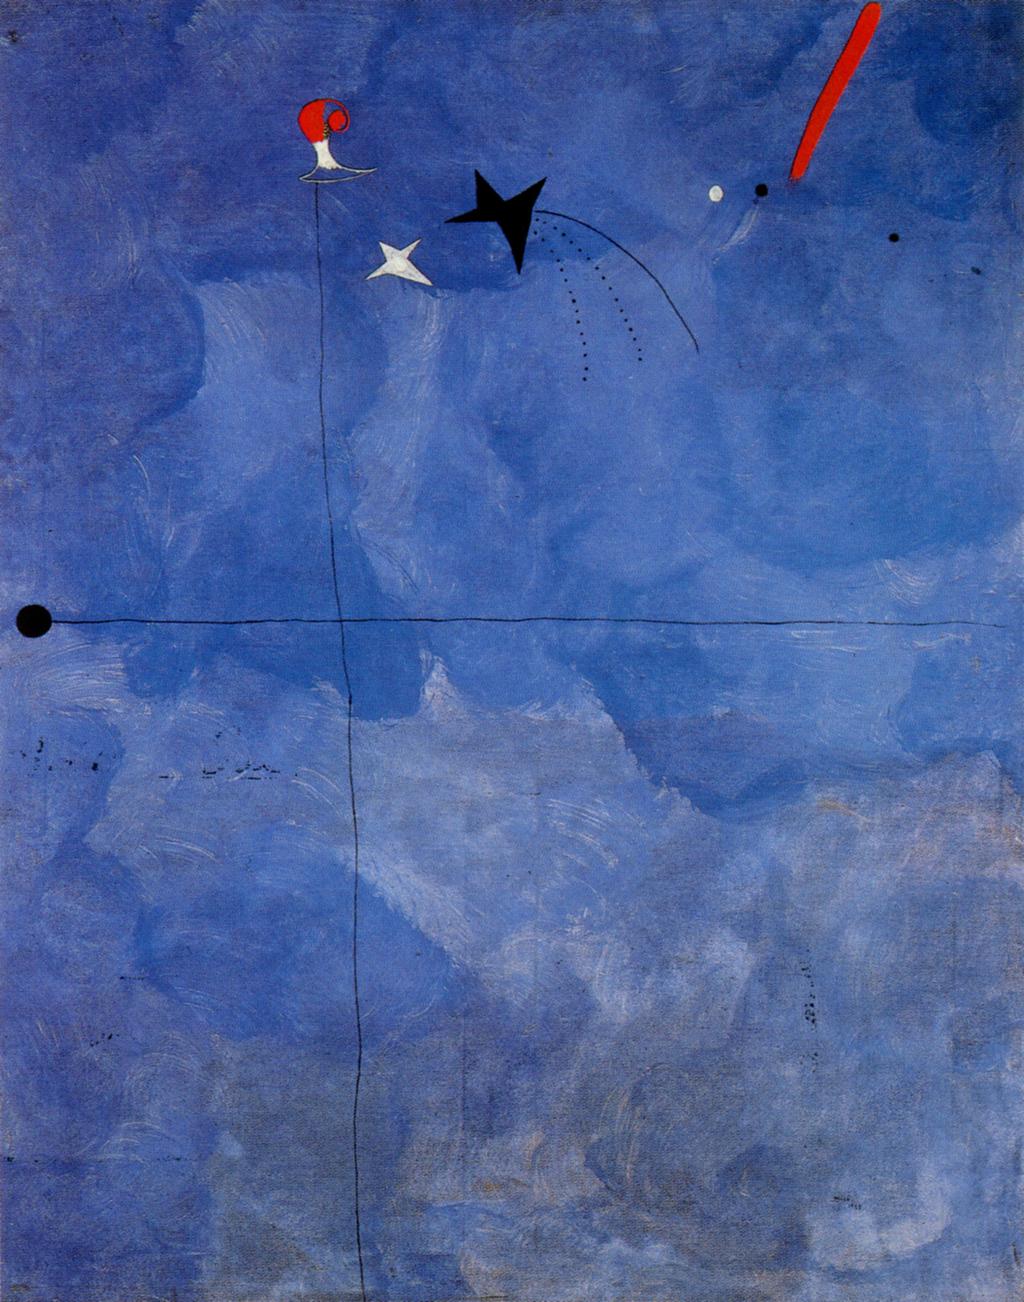 Prikaz 74: Joan Miró, Katalonec, 1925, 146x114 cm, olje na platnu Popolna poenostavitev motiva Katalonca (Prikaz 74), je izražena z dvema glavnima sekajočima se linijama, ki s svojim položajem